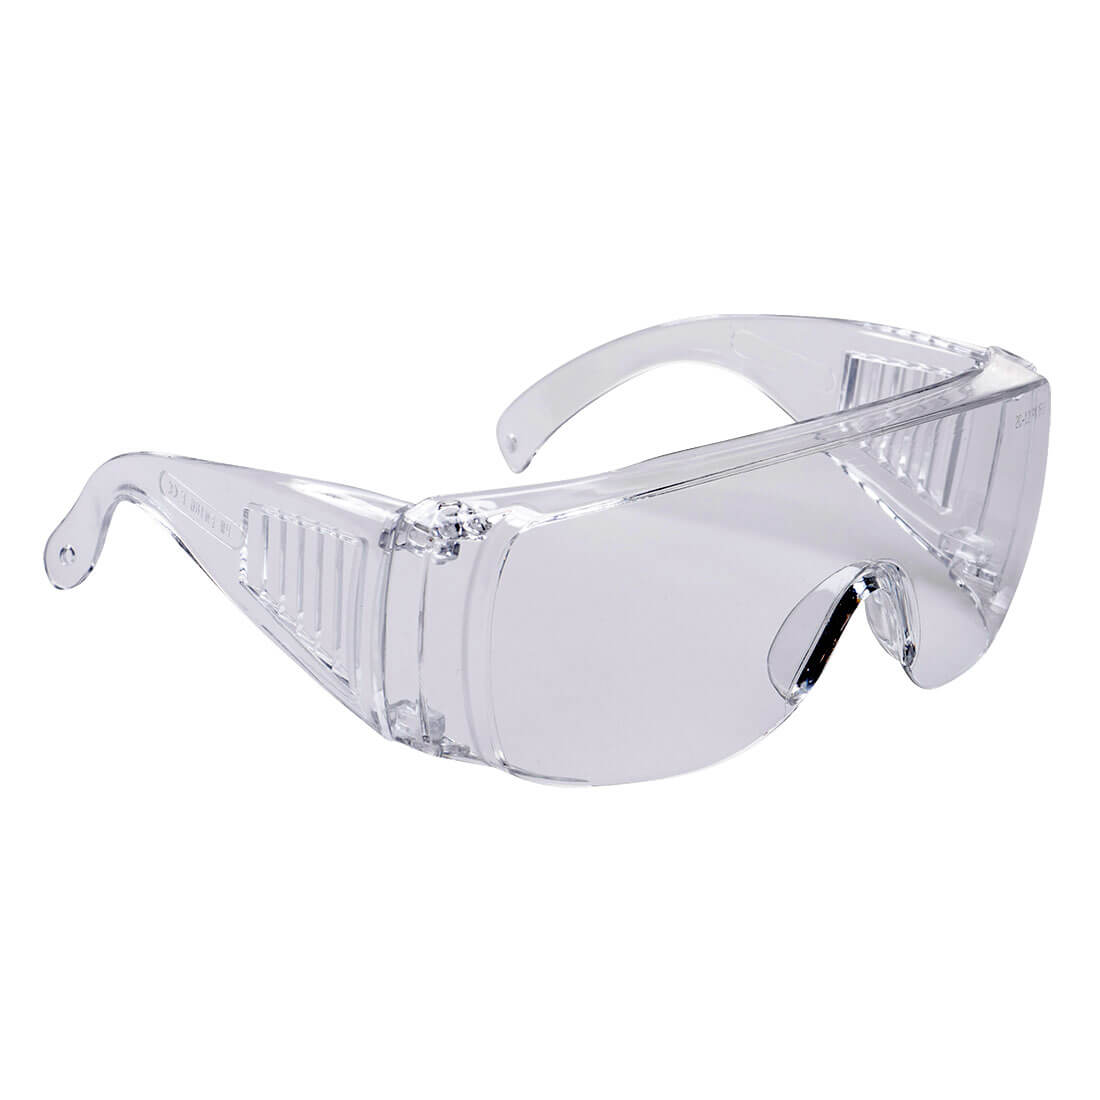 PW30 - Besucher-Schutzbrille